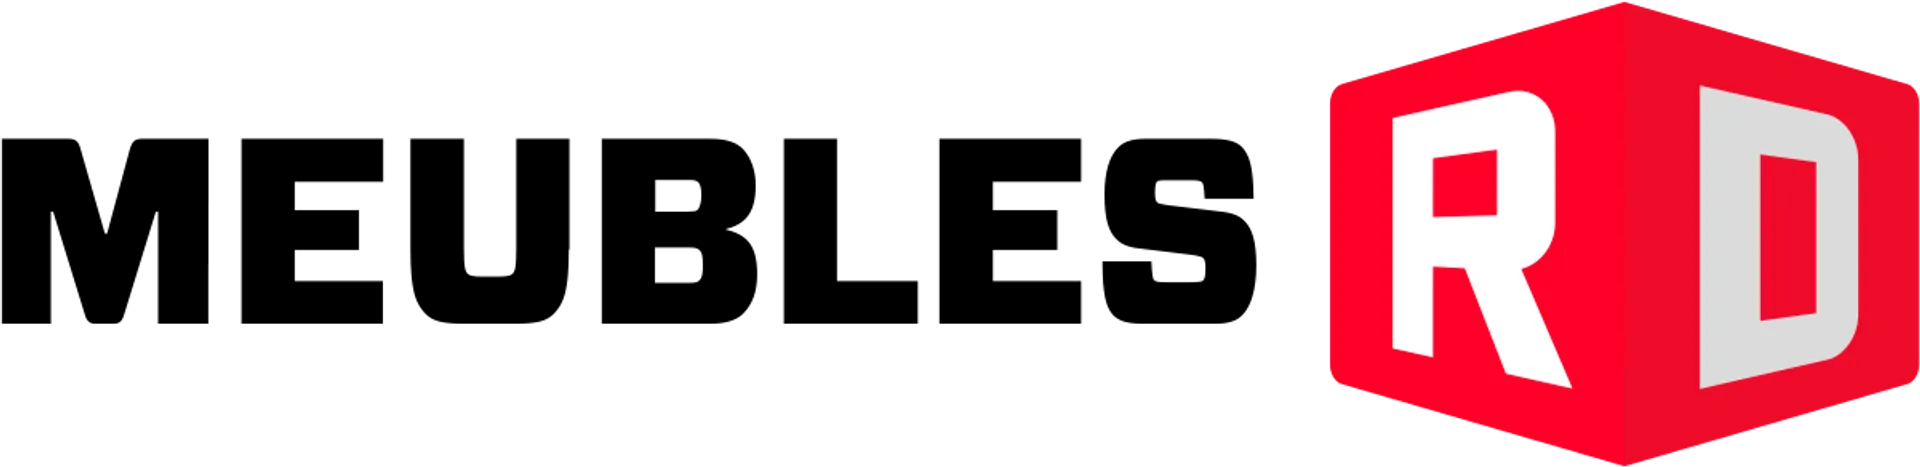 MEUBLES RD logo de circulaire